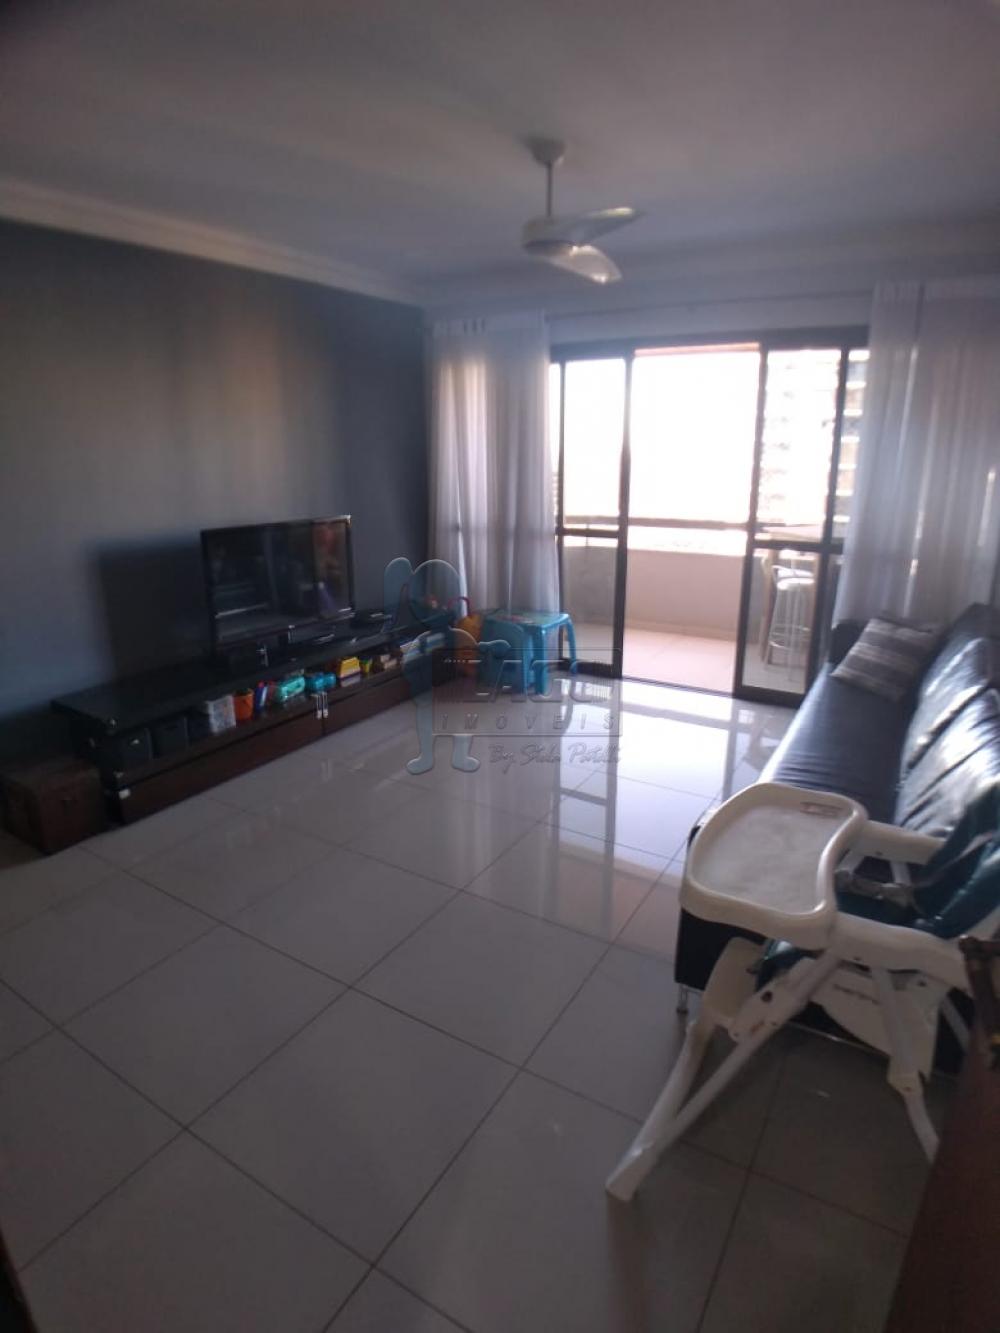 Alugar Apartamentos / Padrão em Ribeirão Preto R$ 1.600,00 - Foto 5